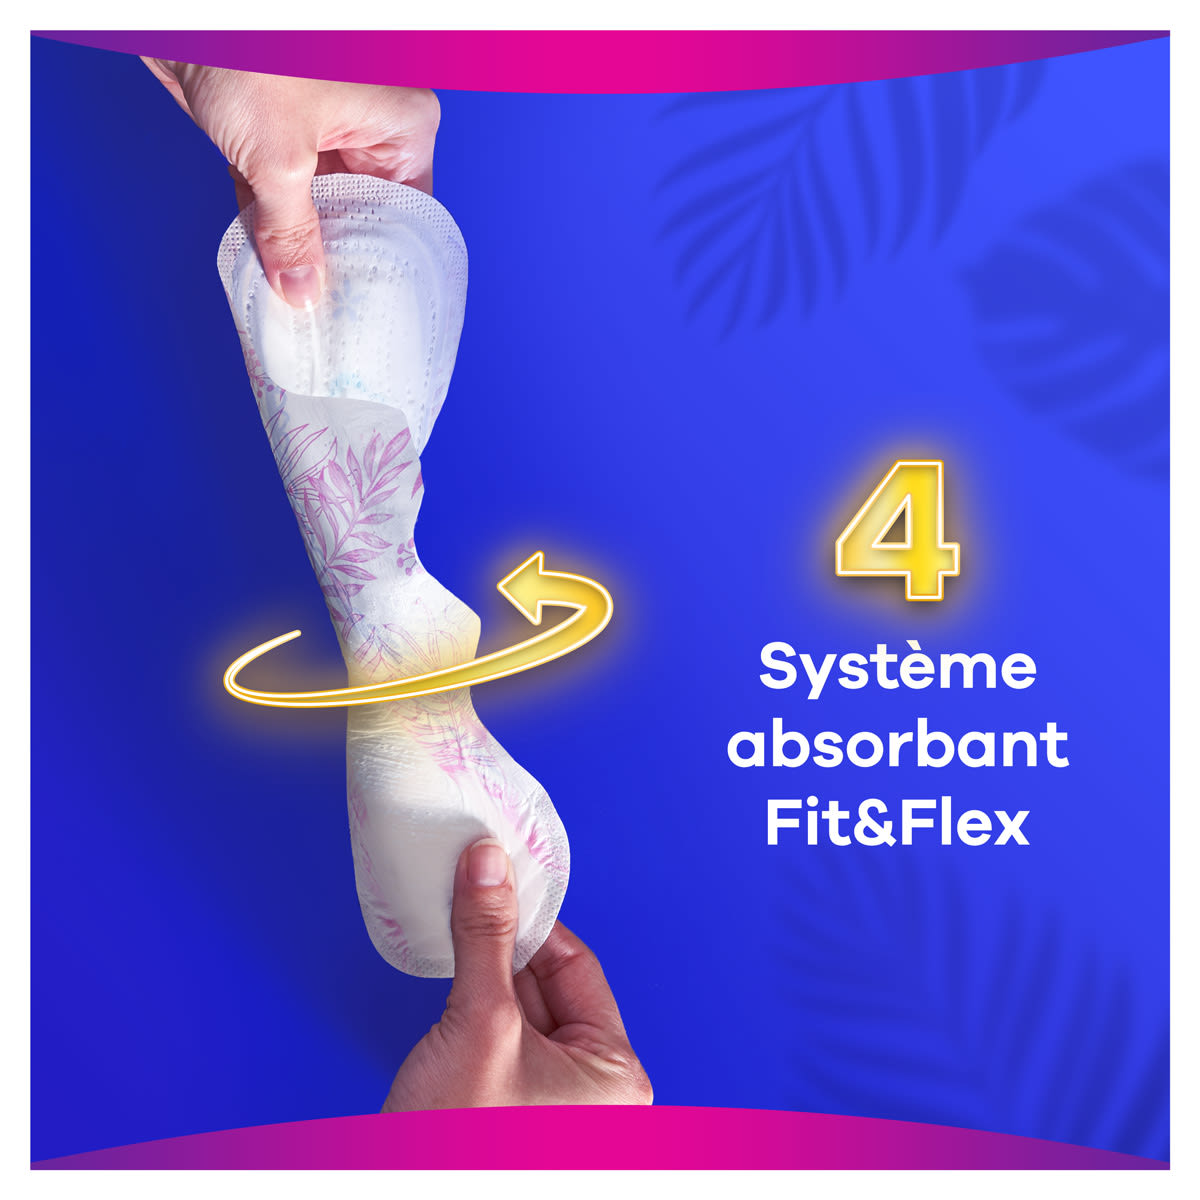 Le système absorbant Fit&Flex est ultra-absorbant et très flexible pour s’adapter à votre corps